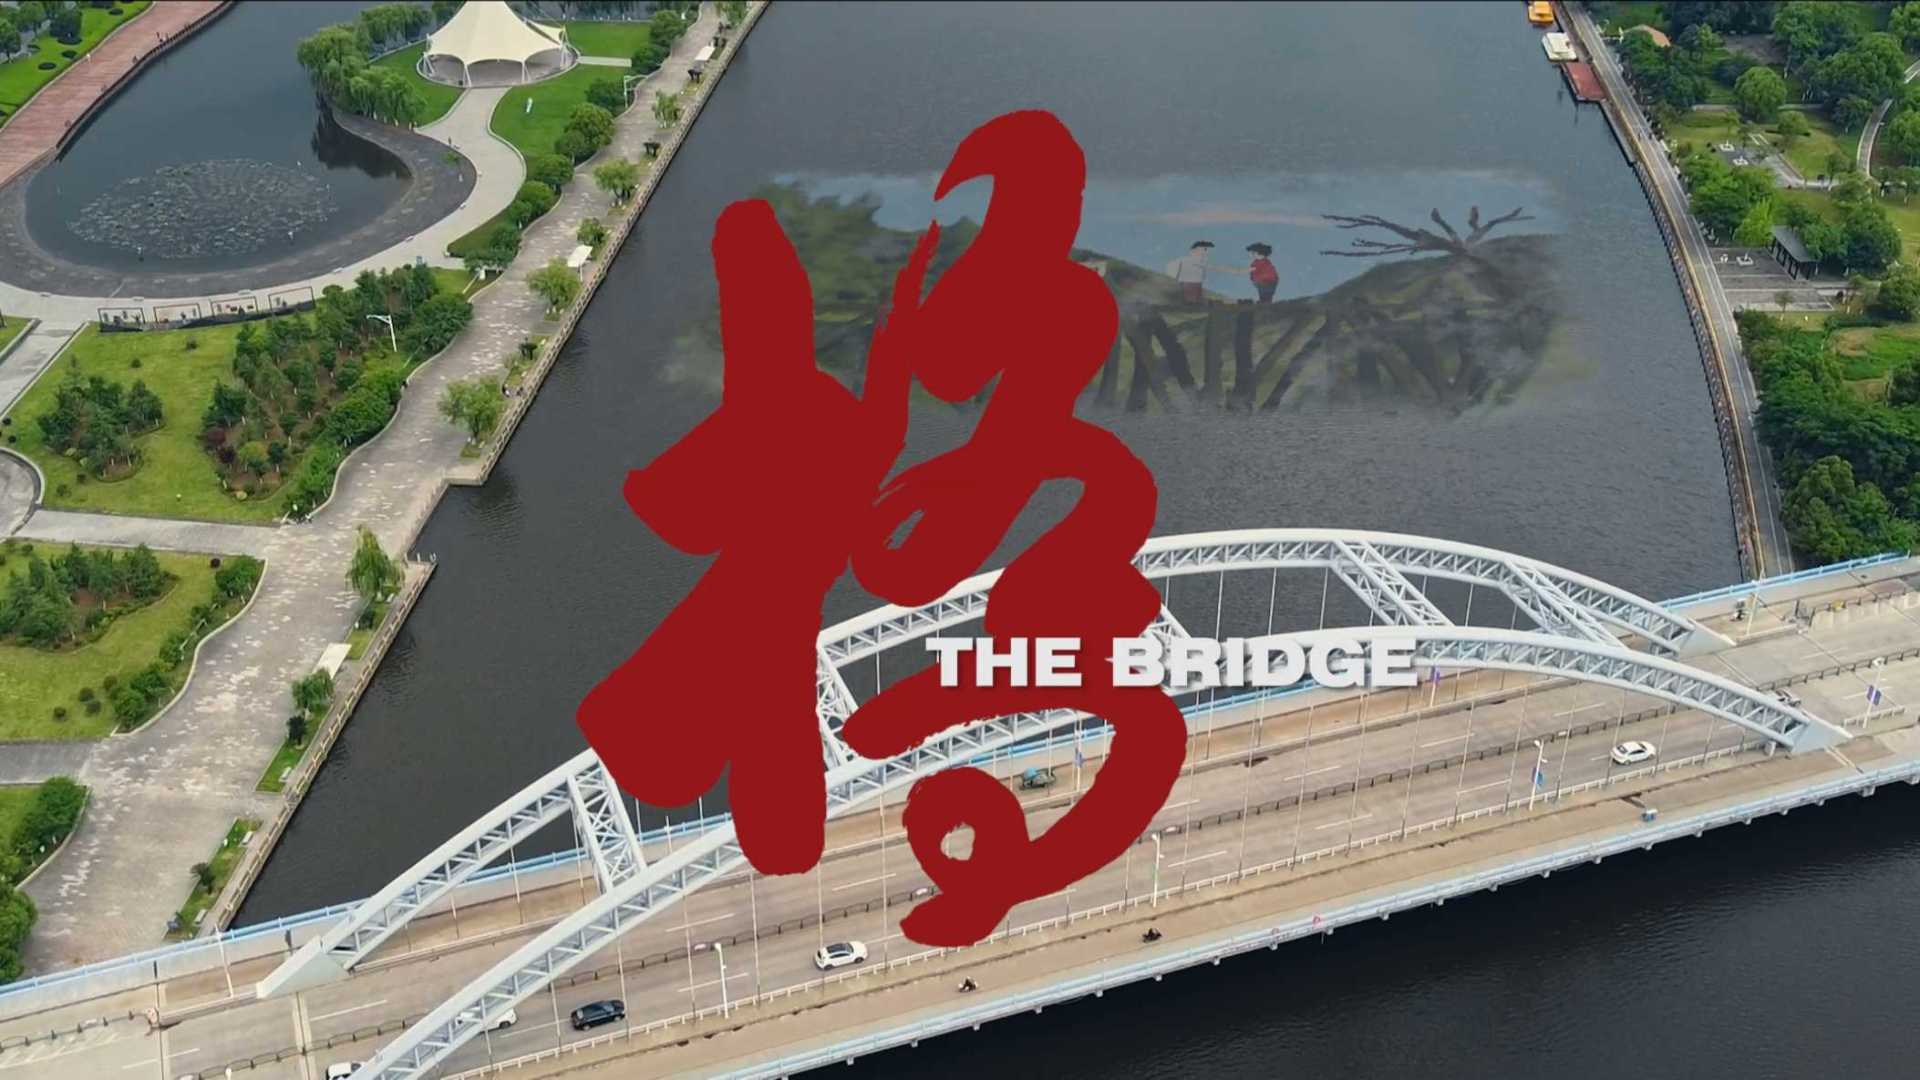 《桥》——去时行木桥 ·归途踏雕梁